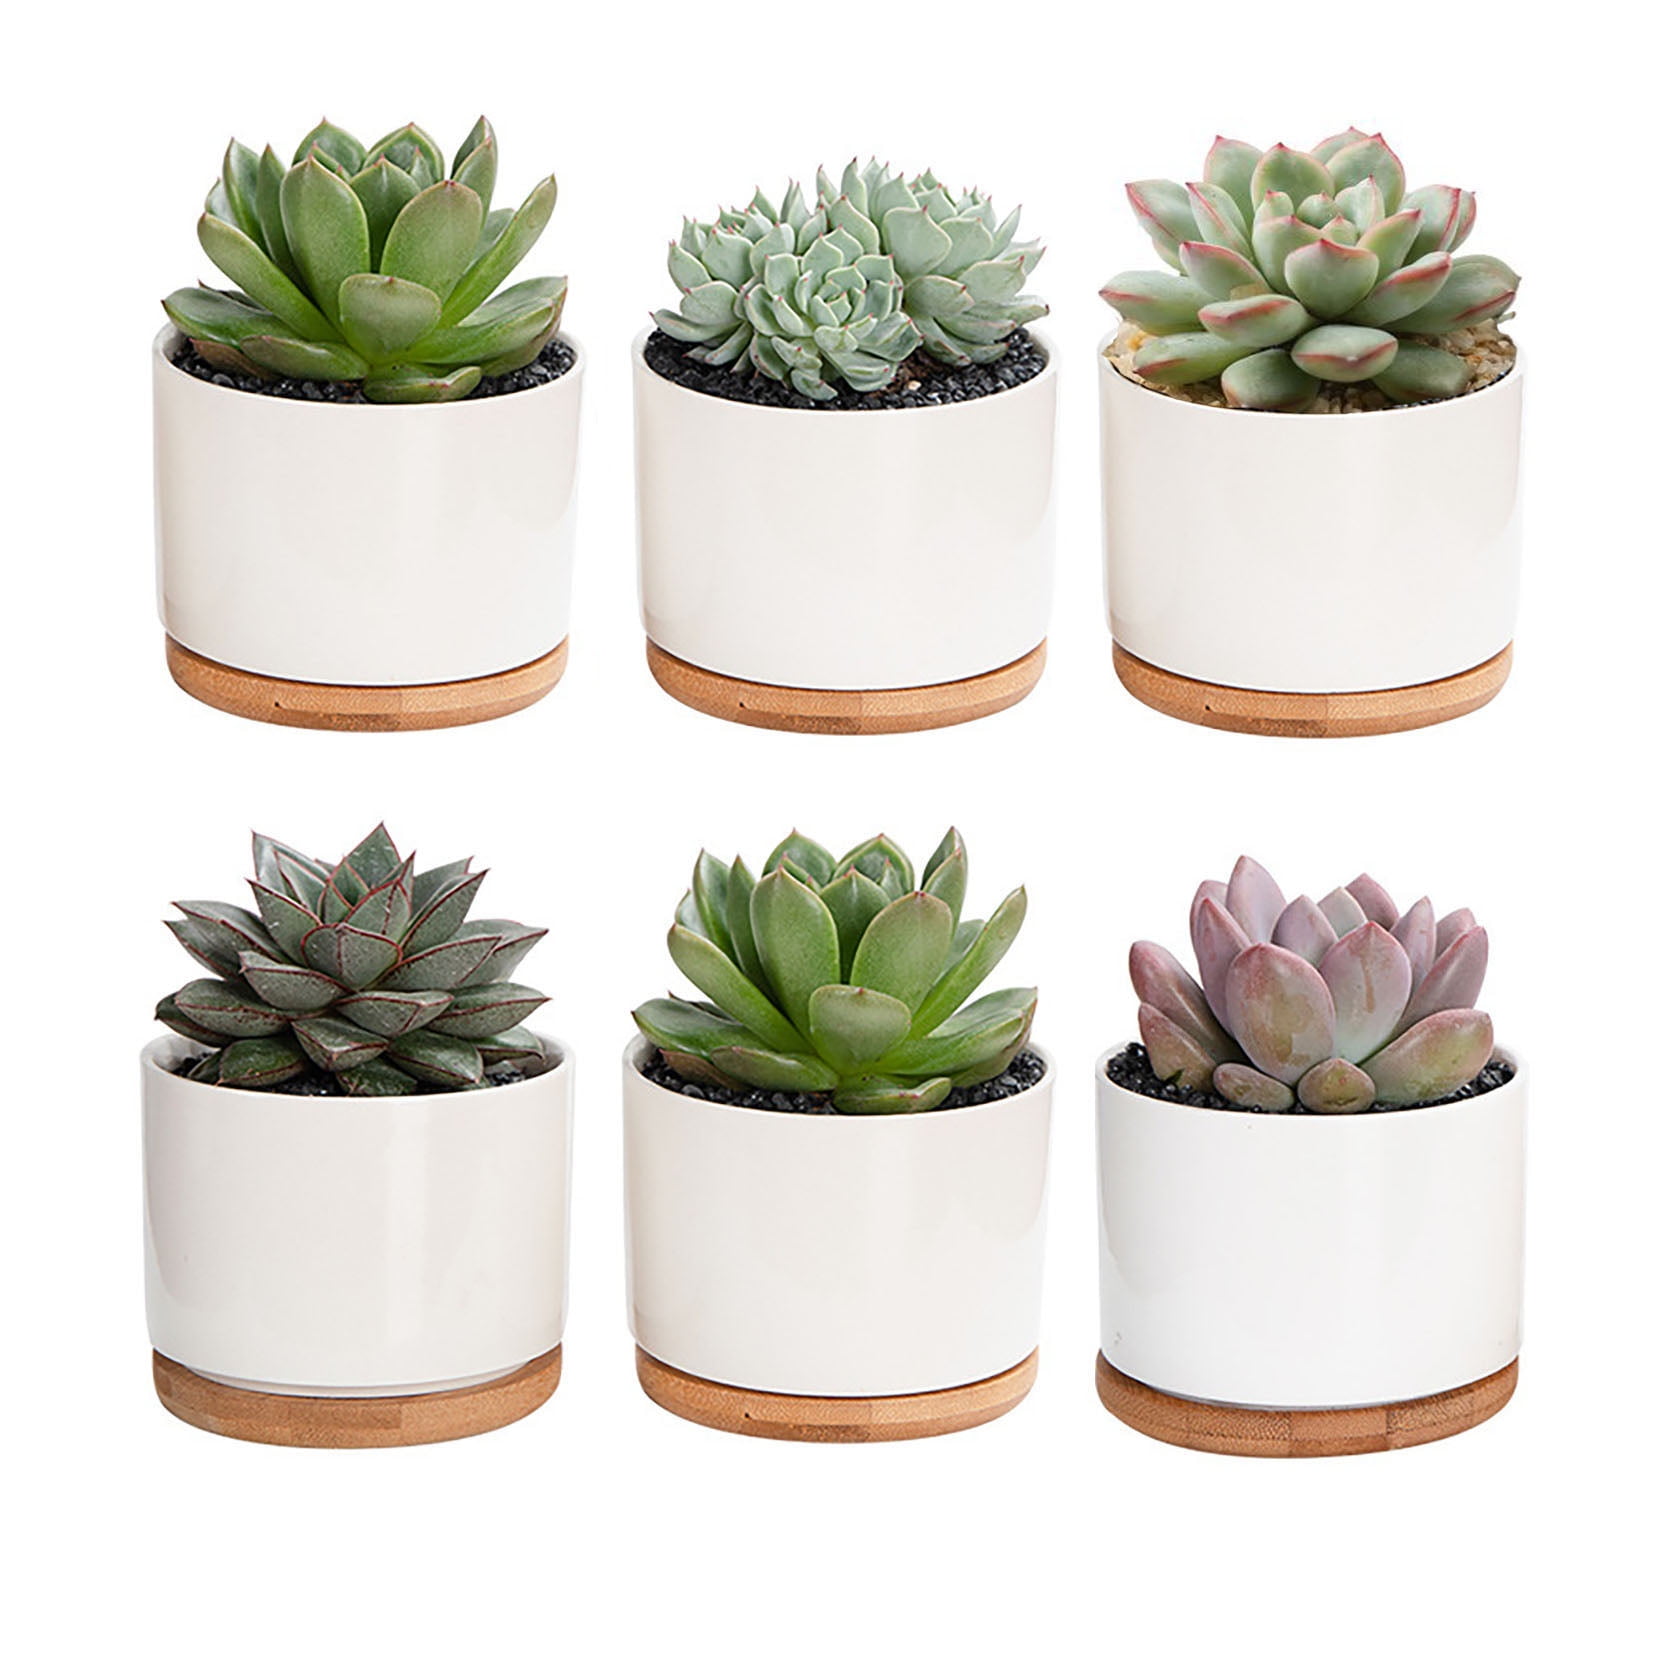 Small ceramic succulent plant pot flower planter garden shop decor 1pcs 